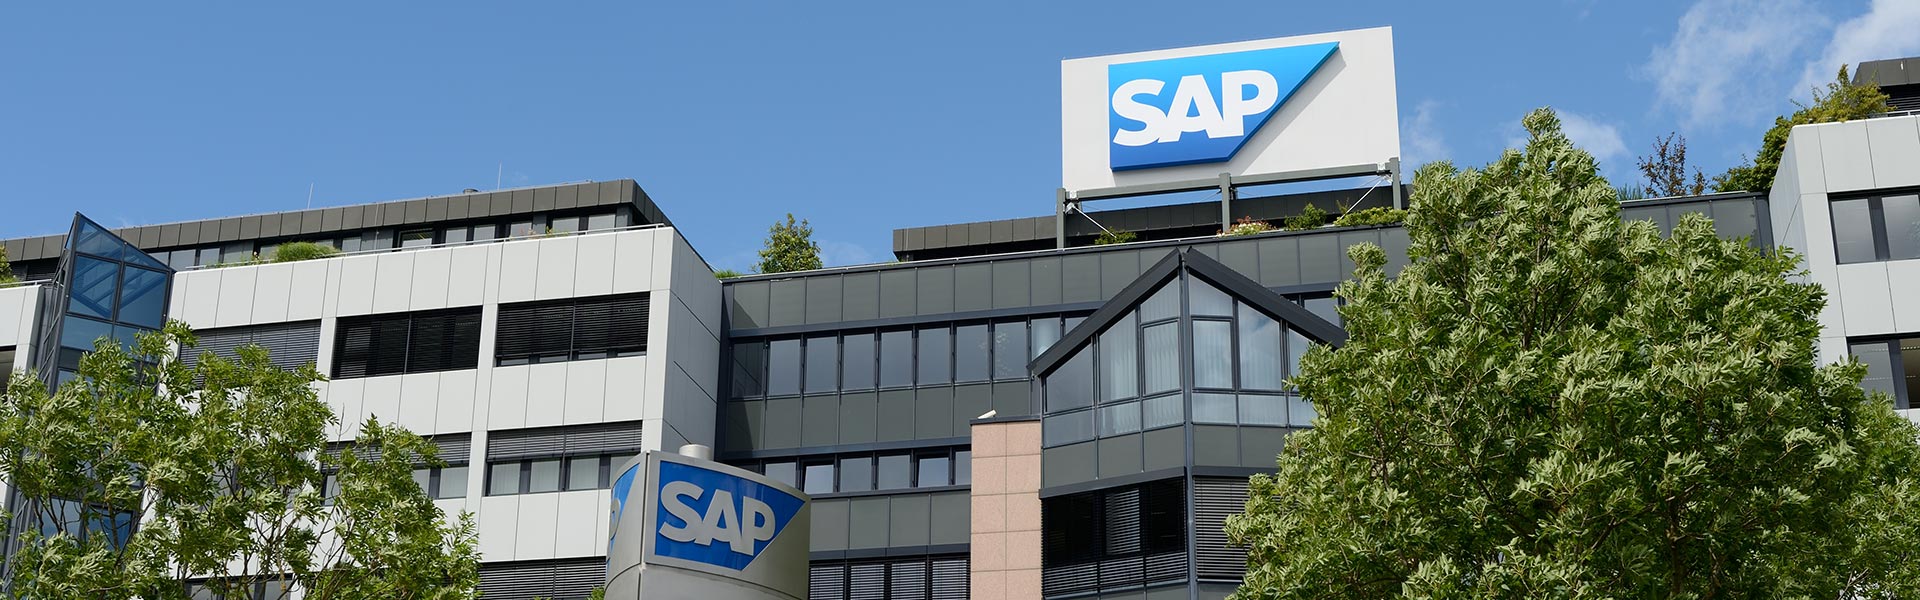 SAP y el ITAM unen esfuerzos para formar al talento del futuro